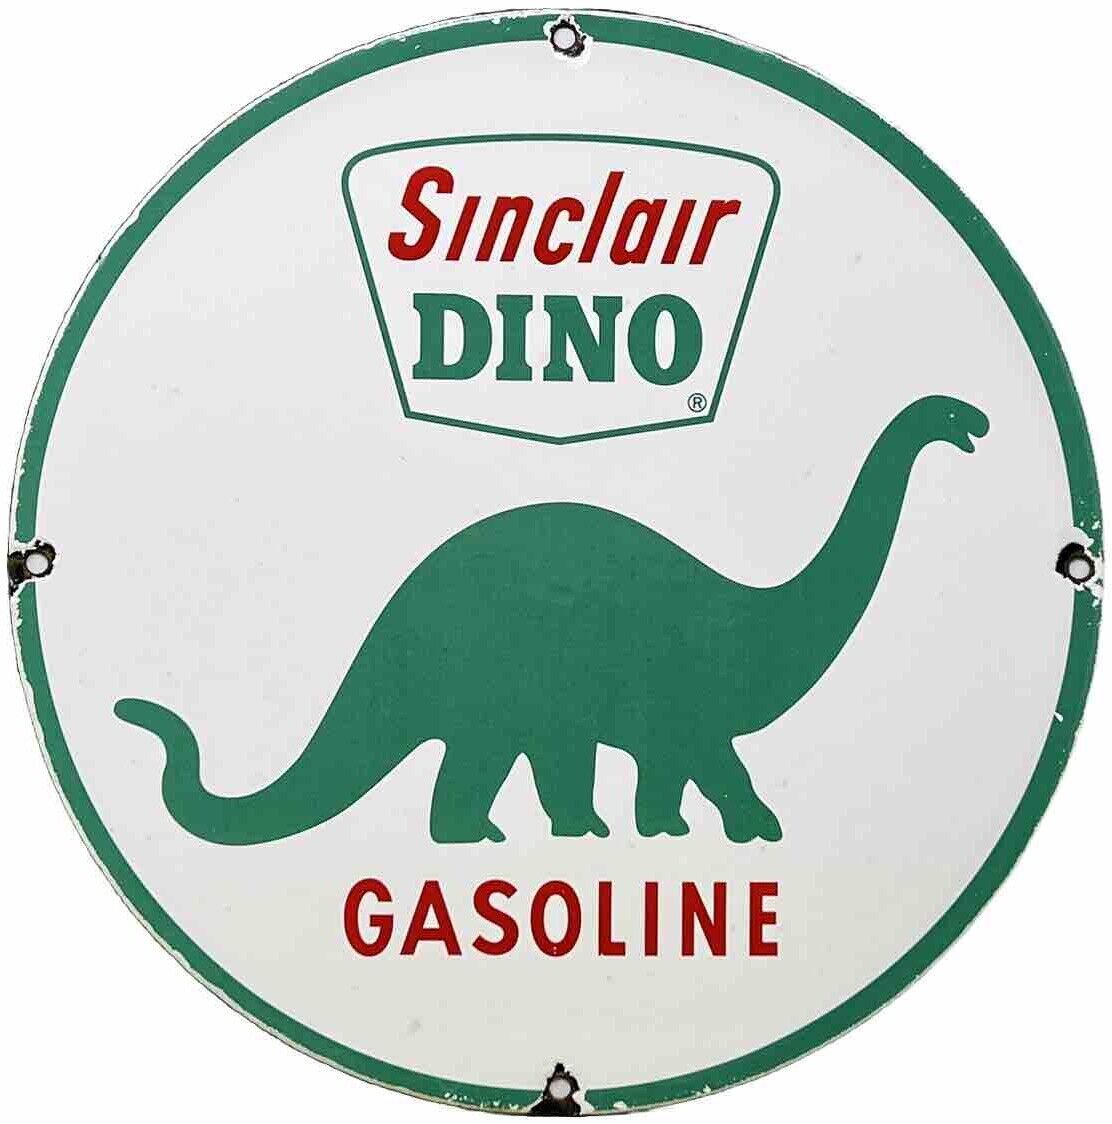 VINTAGE SINCLAIR GASOLINE PORCELAIN SIGN DEALERSHIP GAS STATION DINO MOTOR OIL